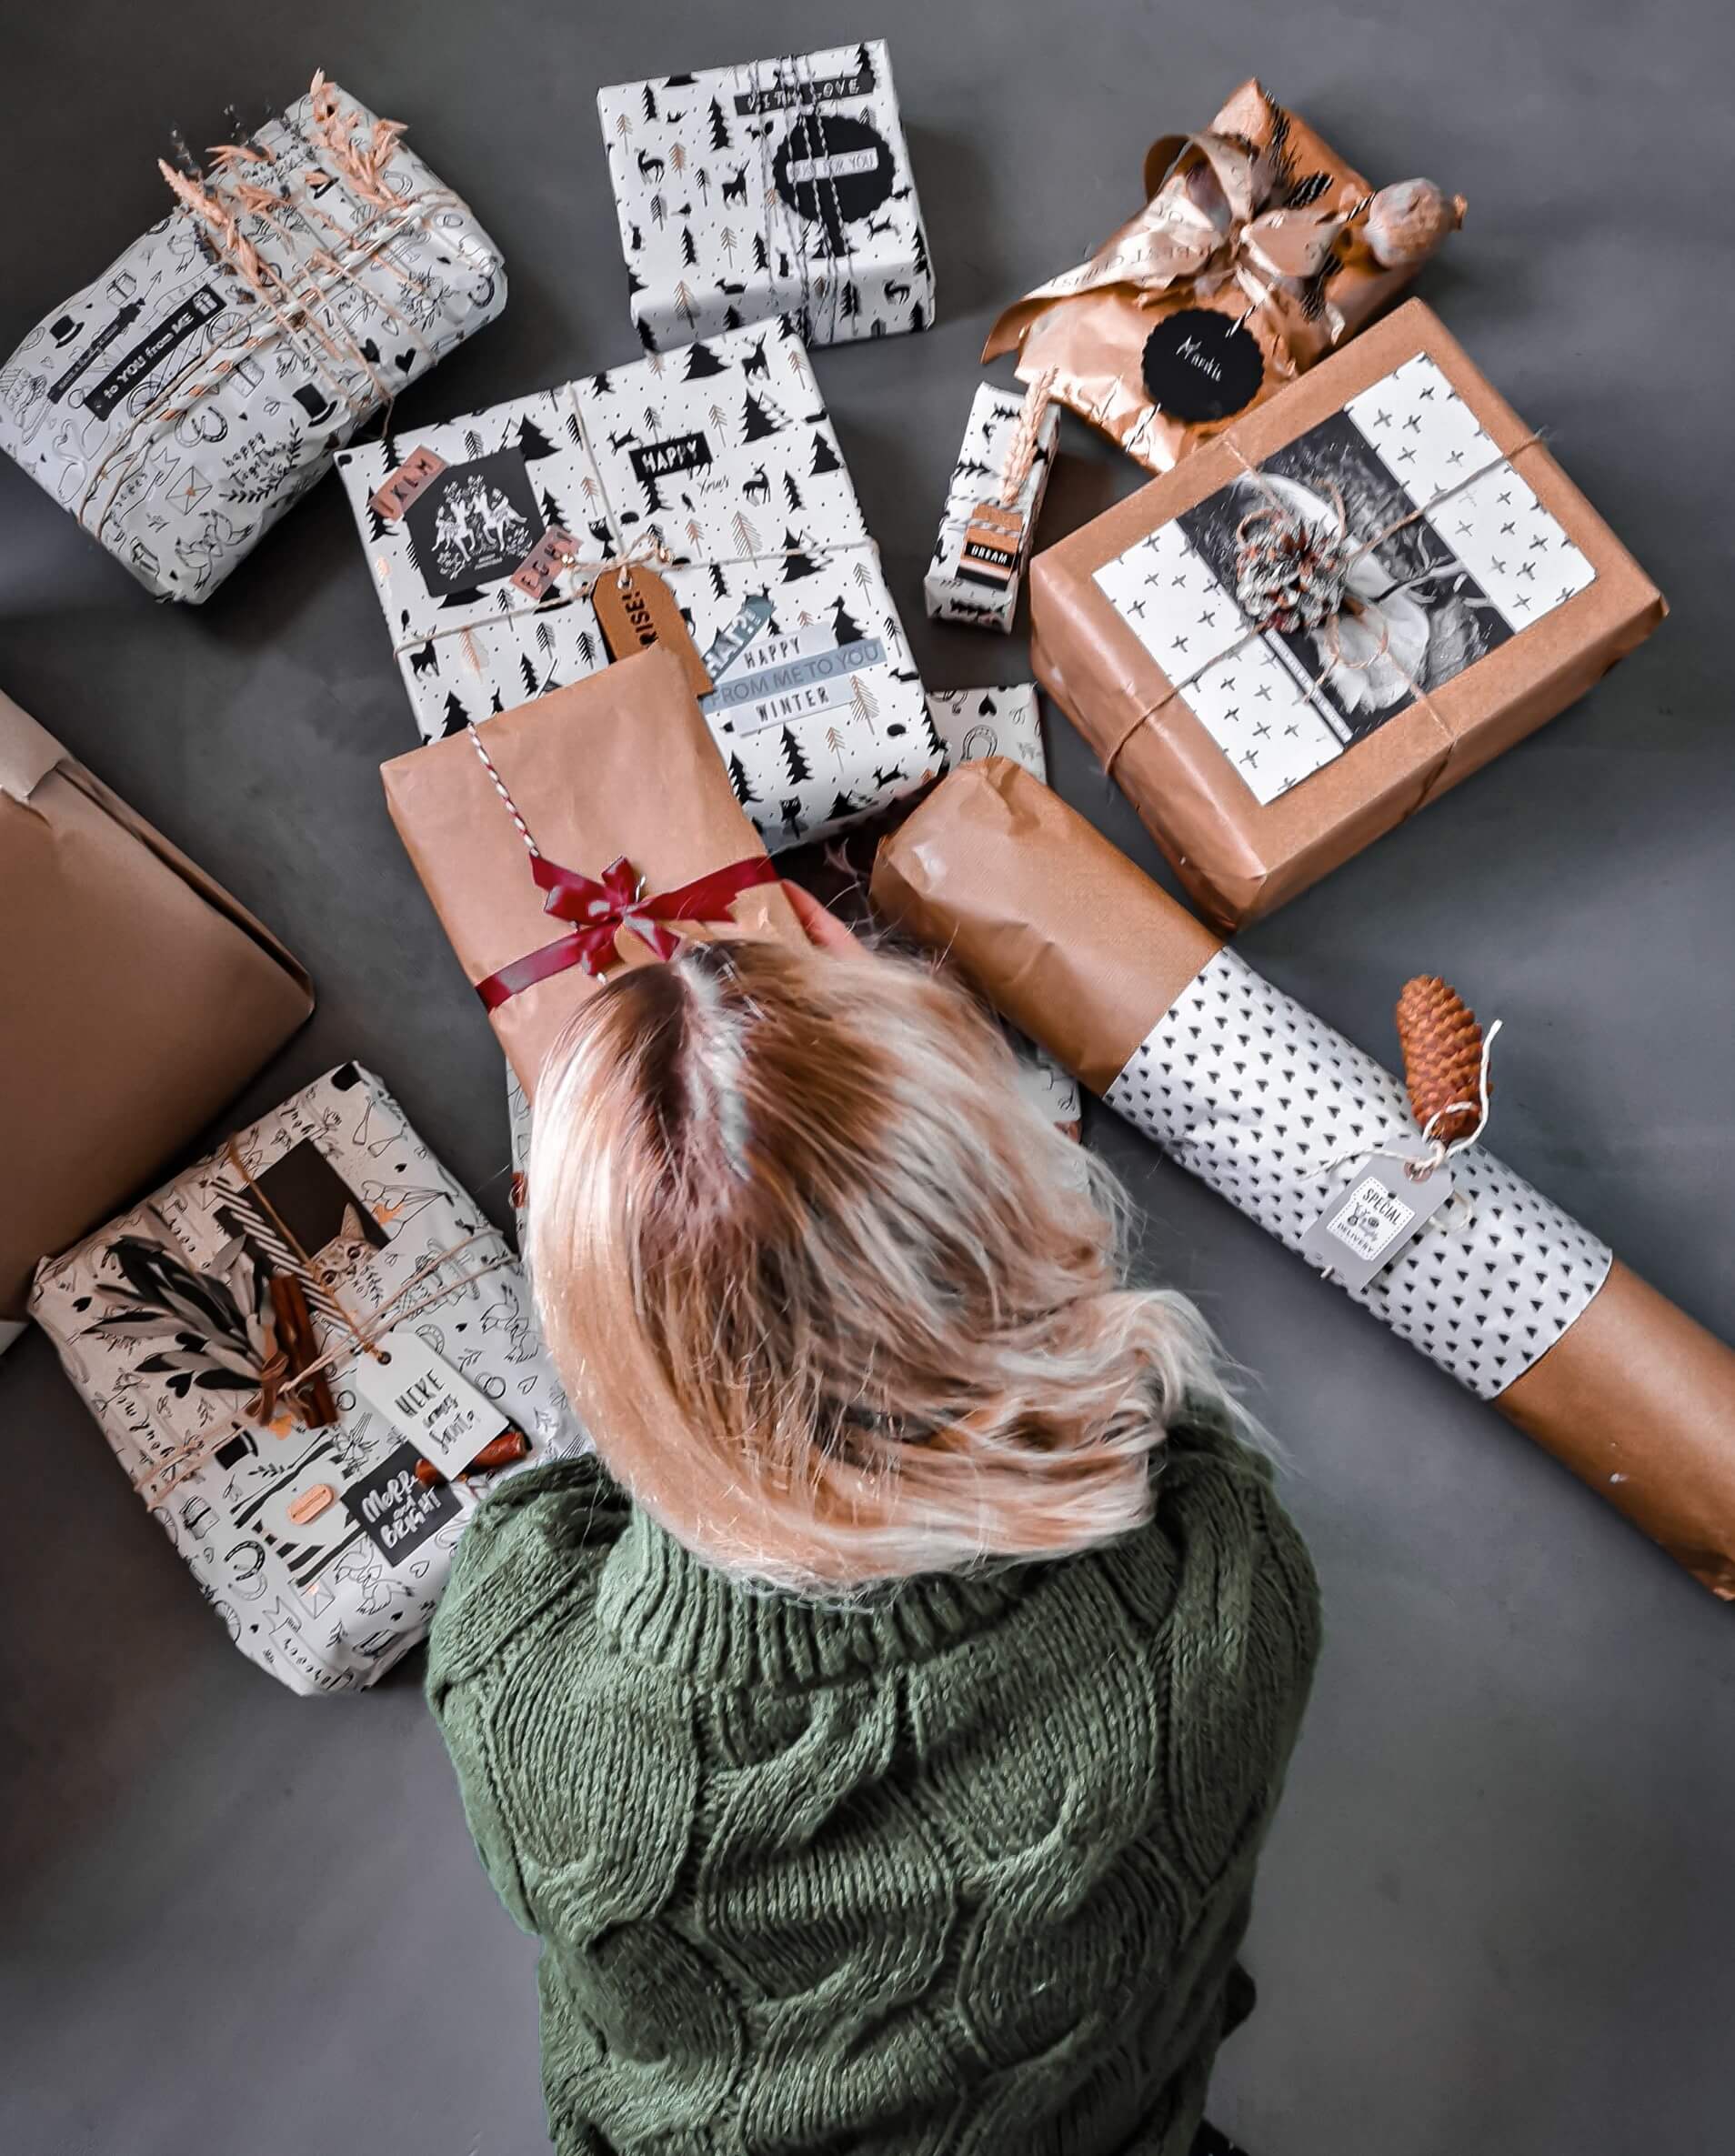 IMG 20191208 120145 resized 20191215 081615540 - Geschenke verpacken: 11 kreative Tipps zum Selbermachen